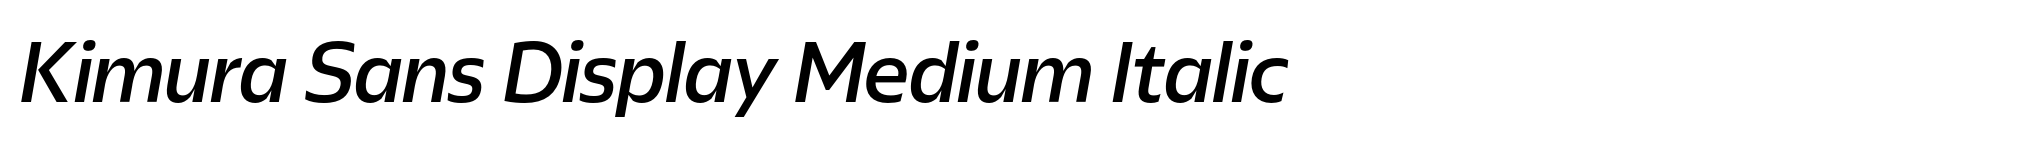 Kimura Sans Display Medium Italic image